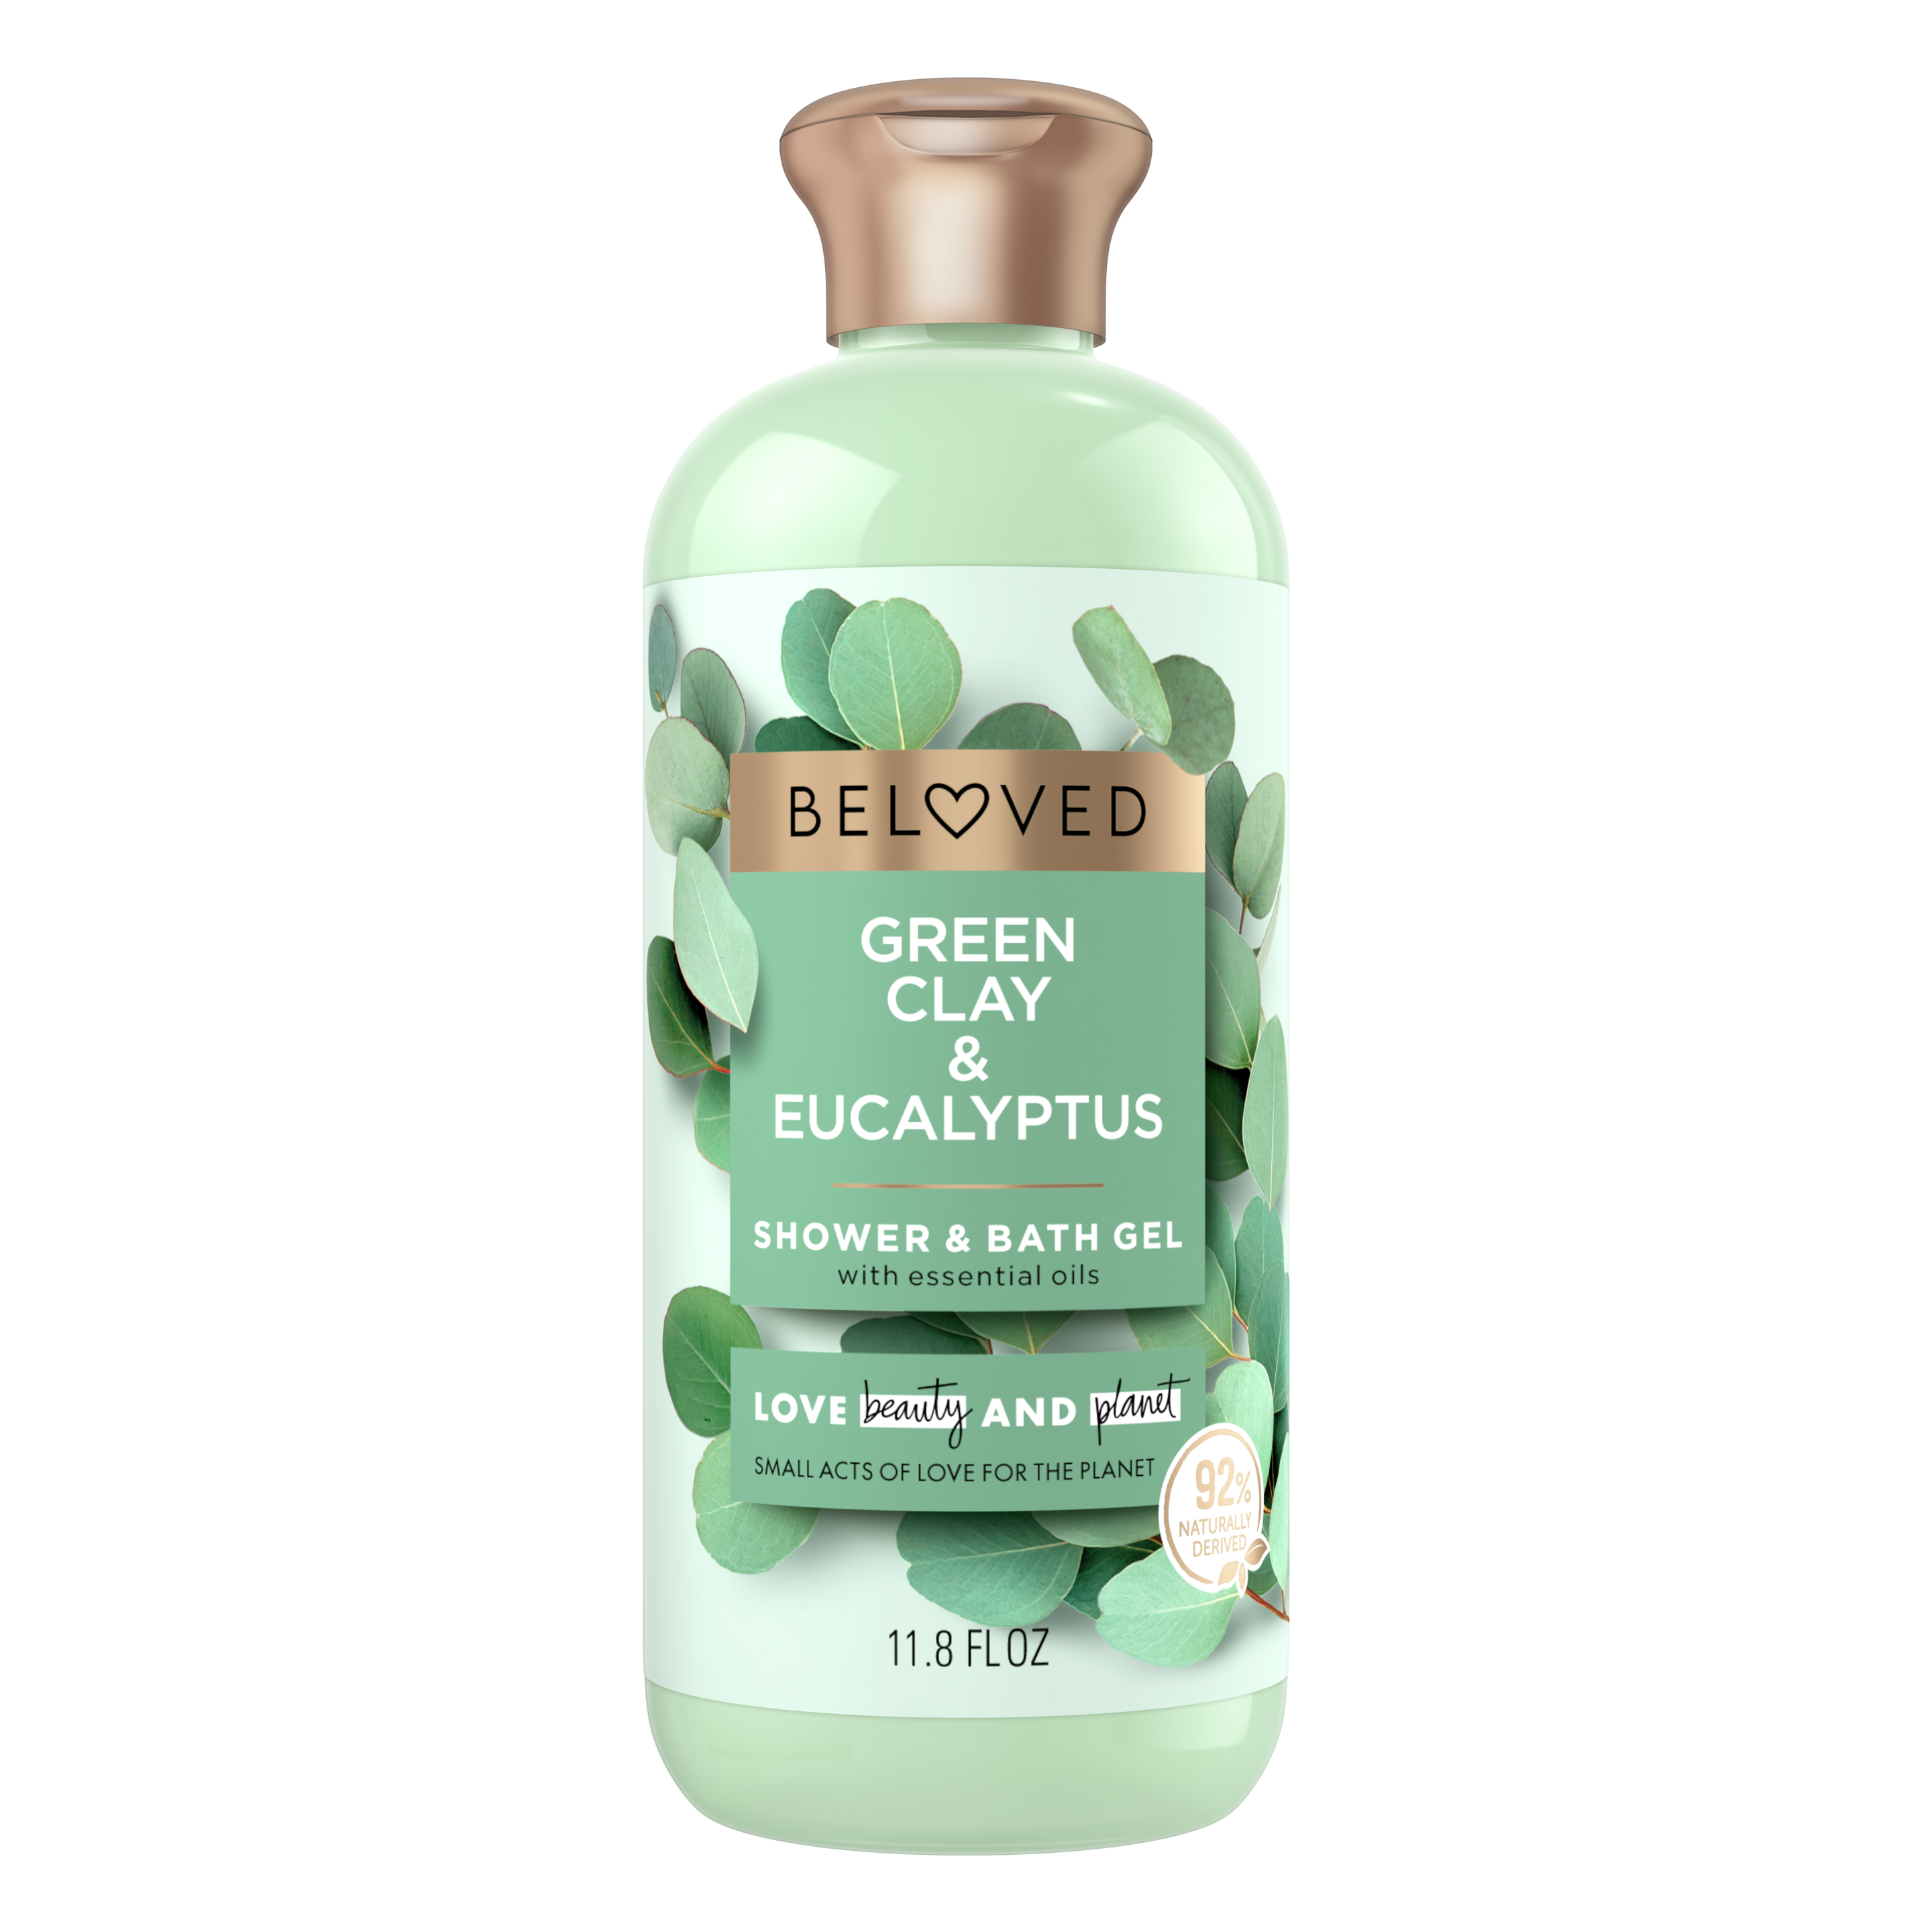 Green Clay & Eucalyptus Bath & Shower Gel